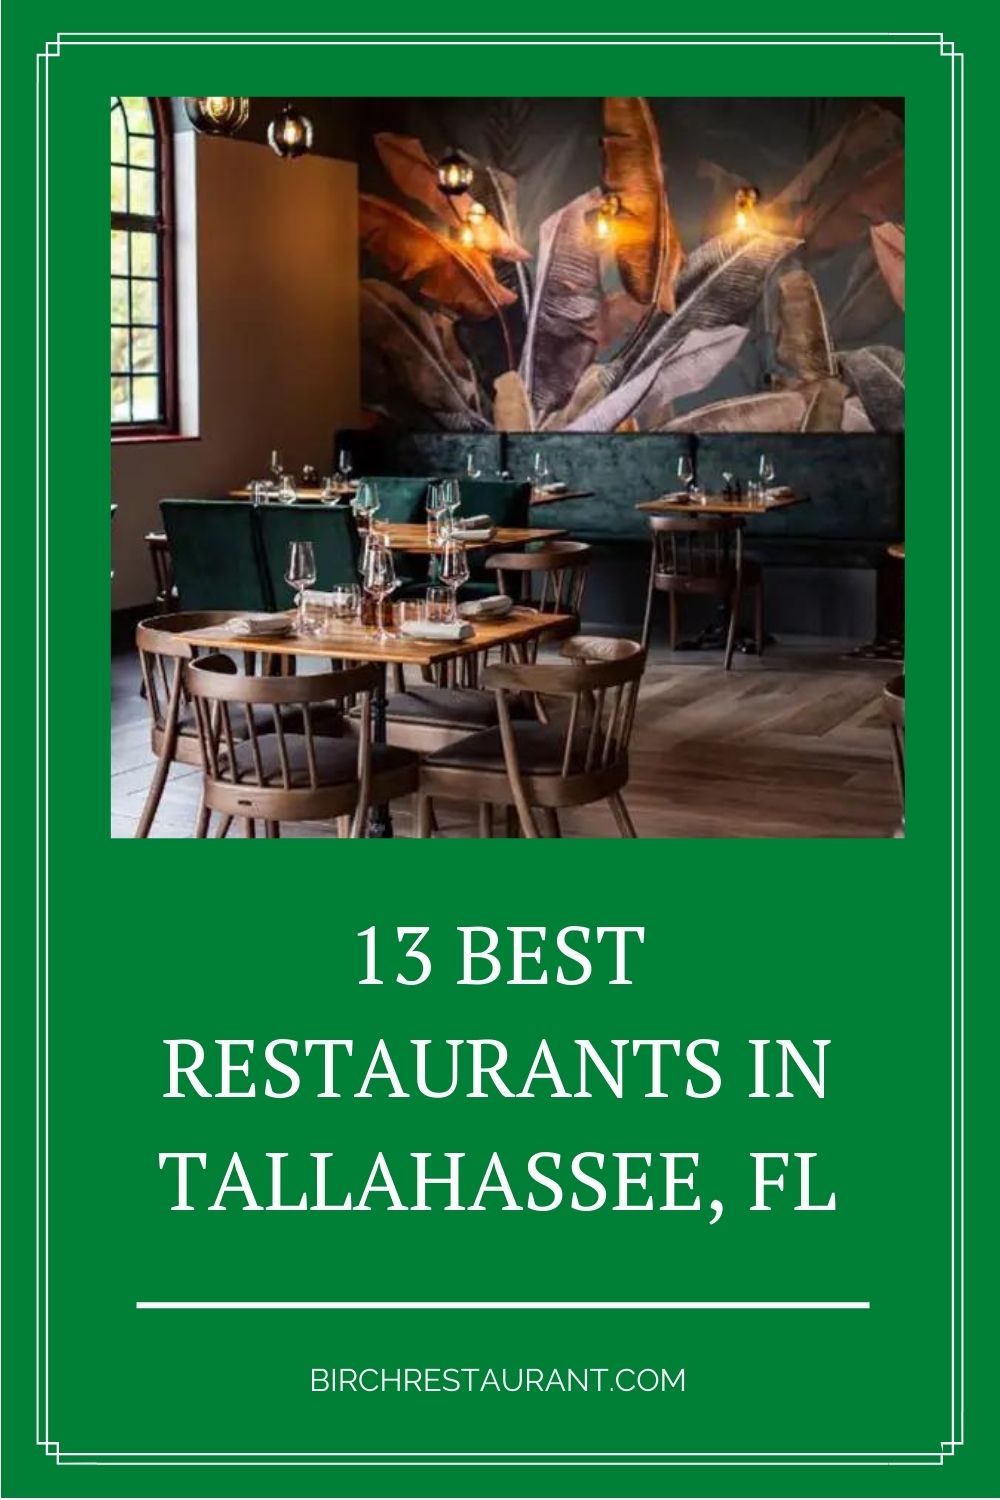 Best Restaurants in Tallahassee